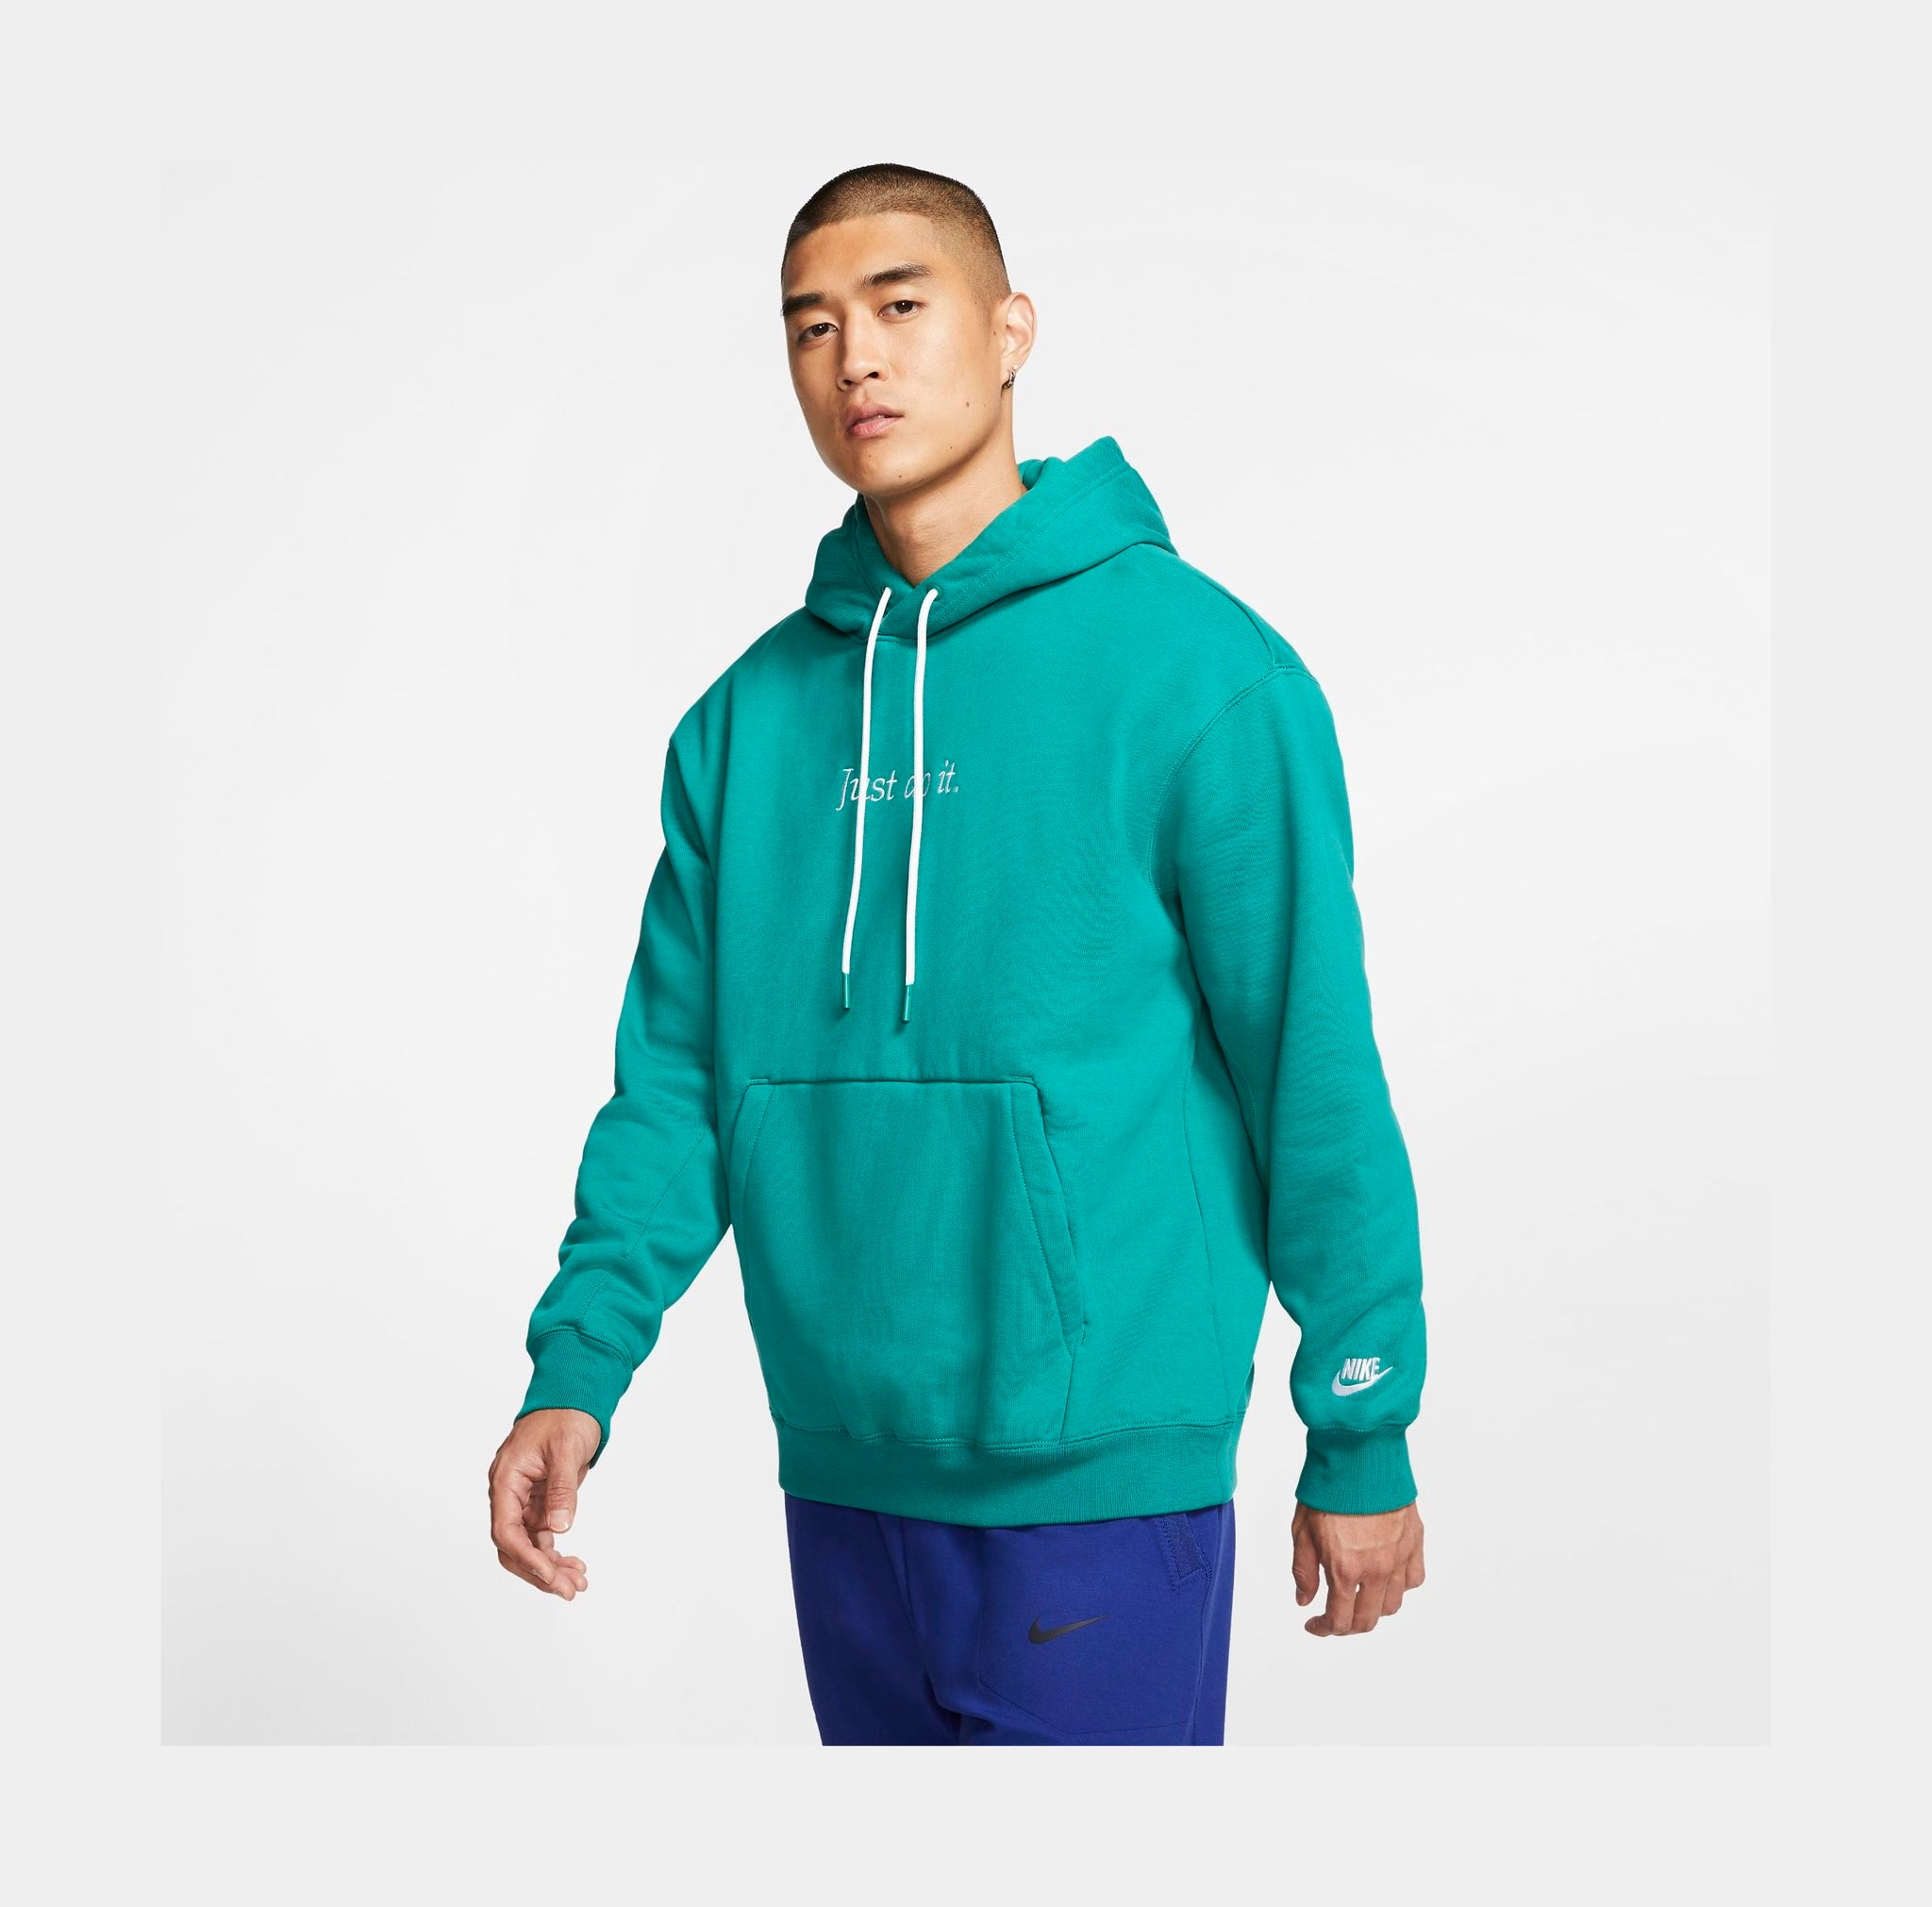 Hooded jacket, blue, Nike | La Redoute